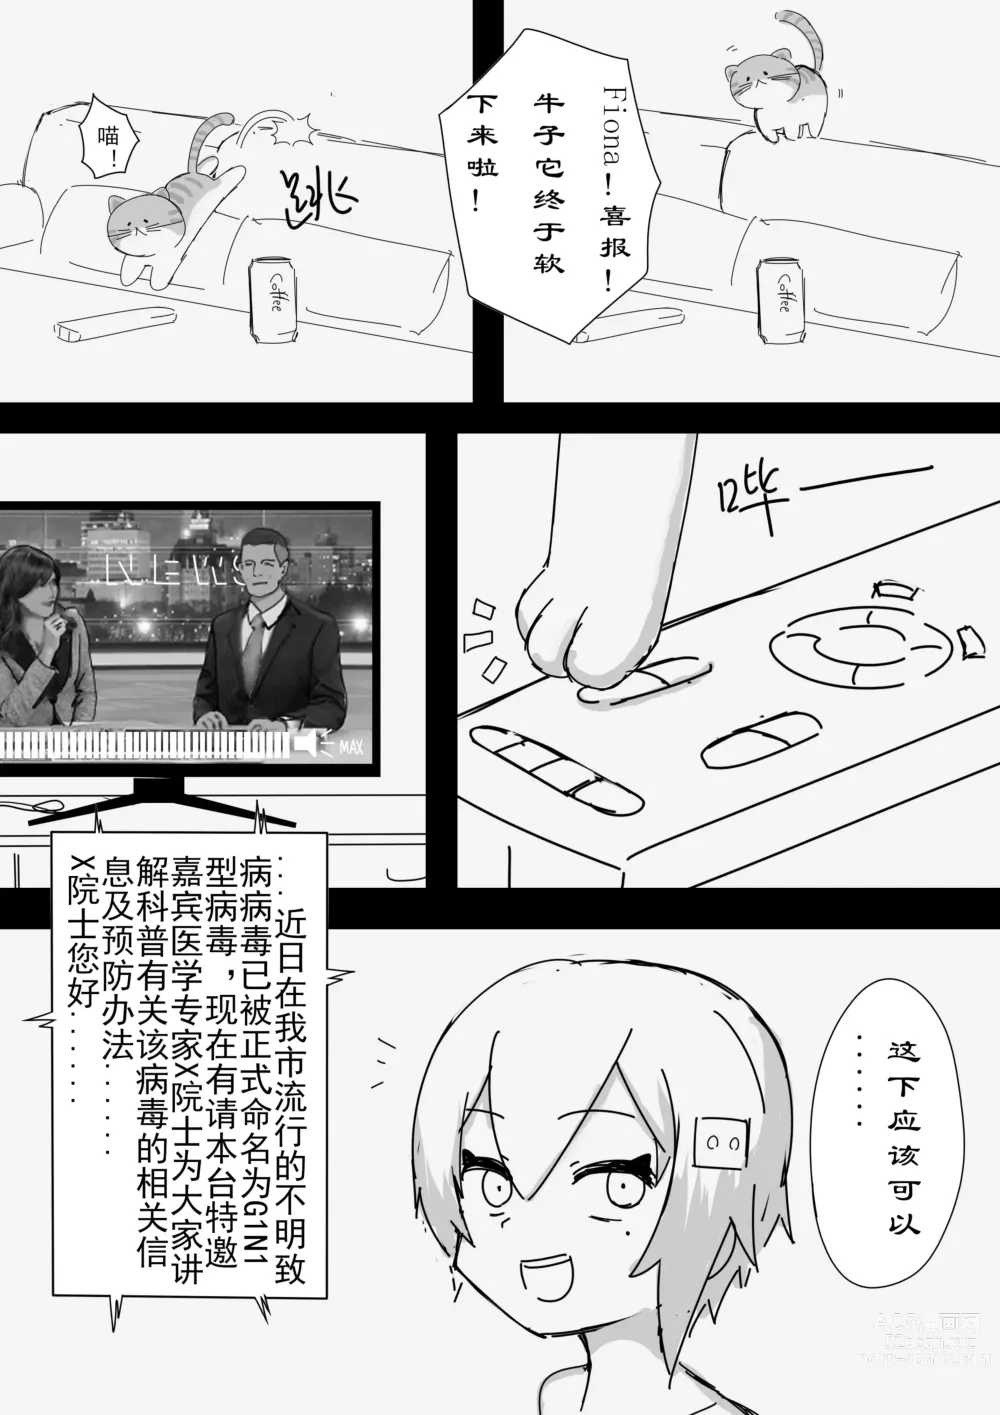 Page 33 of manga 震惊！底边小v霏豆儿竟因为GN营业发生此事！背后的原因令人沉思